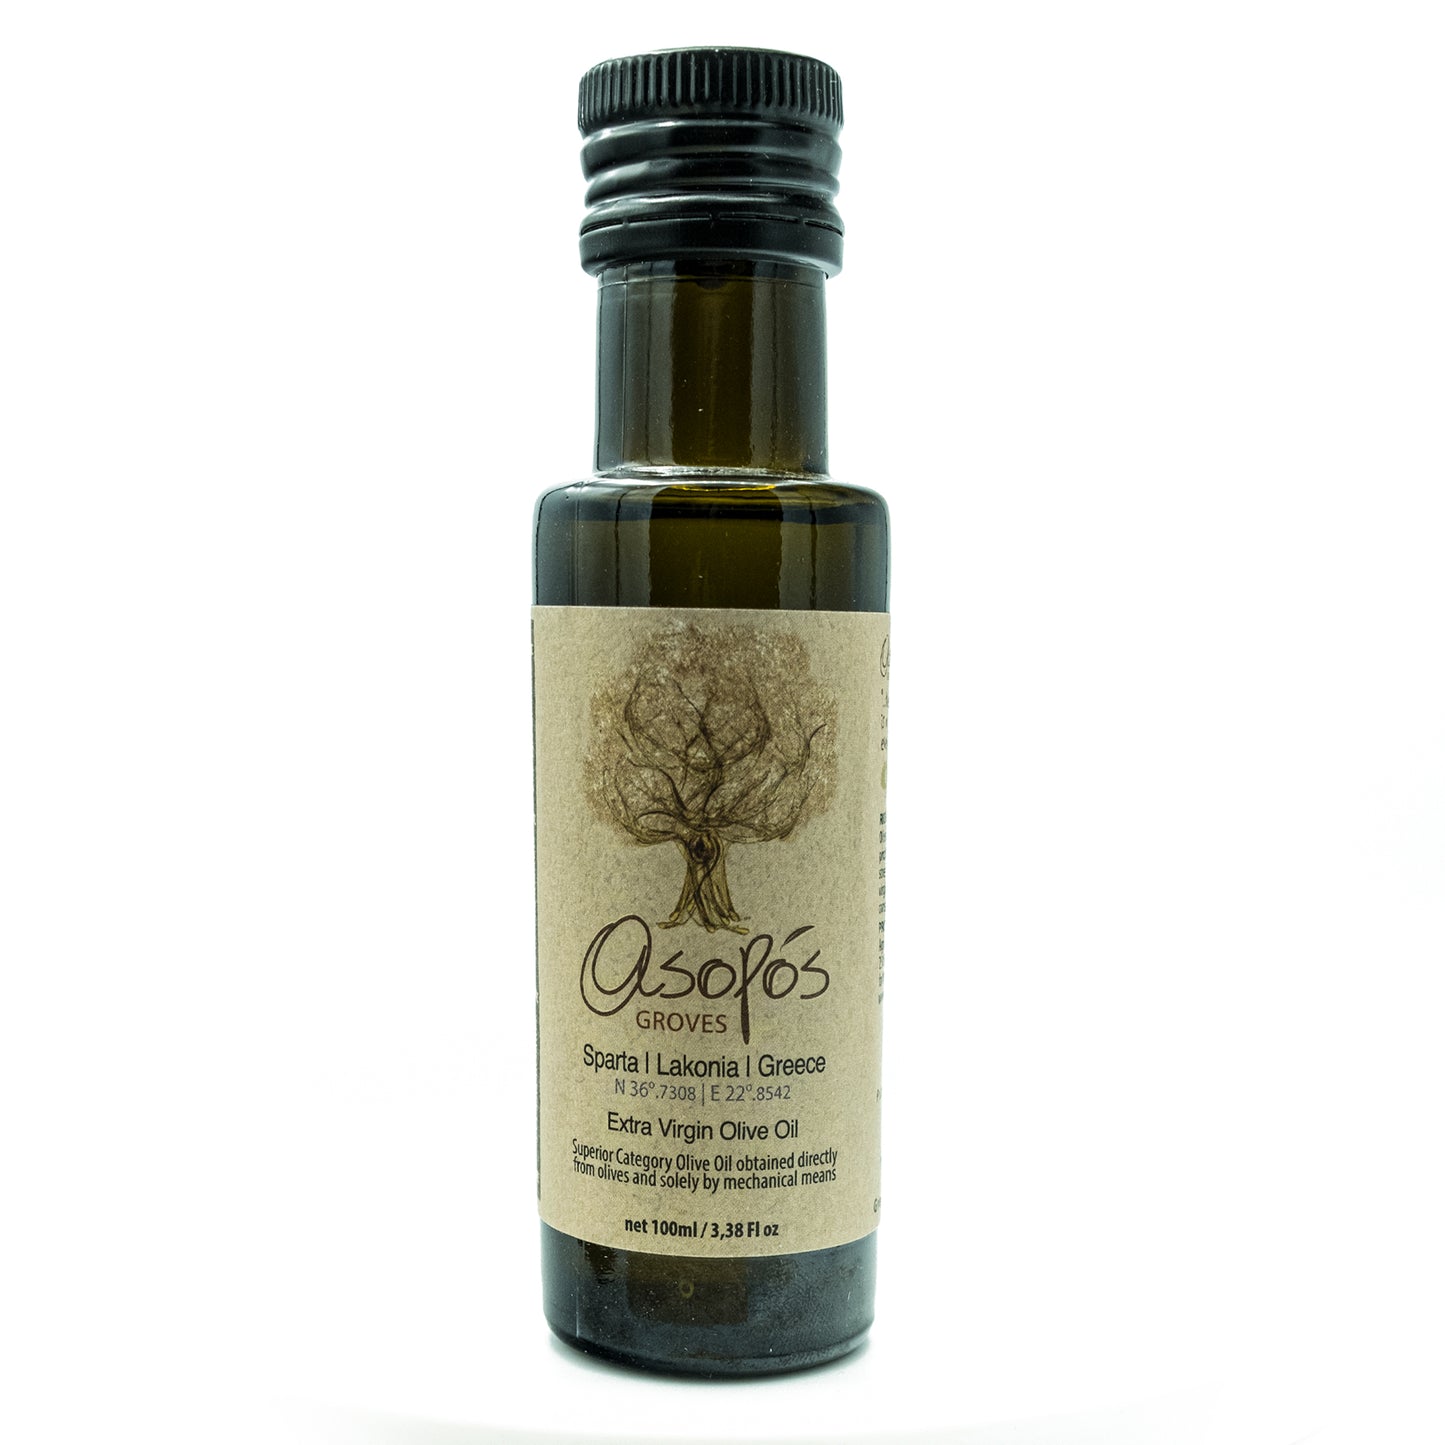 Asopos Groves Extra Virgin Olive Oil bottle 100ml